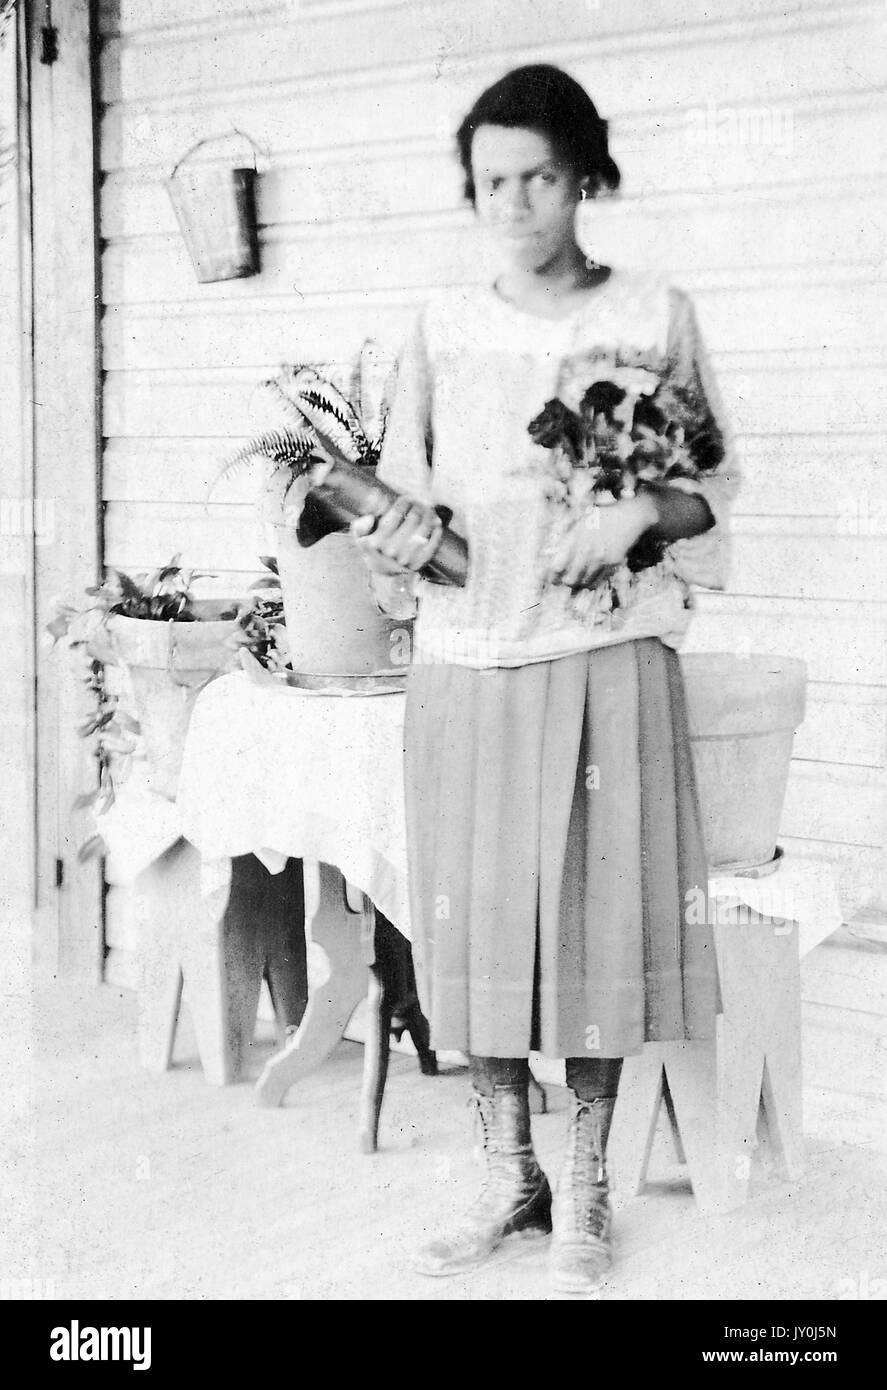 Porträt einer afroamerikanischen Frau namens Mrs ASP, sie steht auf einer Veranda und vor einem kleinen Tisch, der Blumentöpfe hält, sie hält ein Buch in einem Arm und Blumen in ihrem anderen Arm, Sie trägt ein lockeres, helles Hemd und einen langen, hellen Rock, sie trägt hohe Schnürstiefel, 1915. Stockfoto